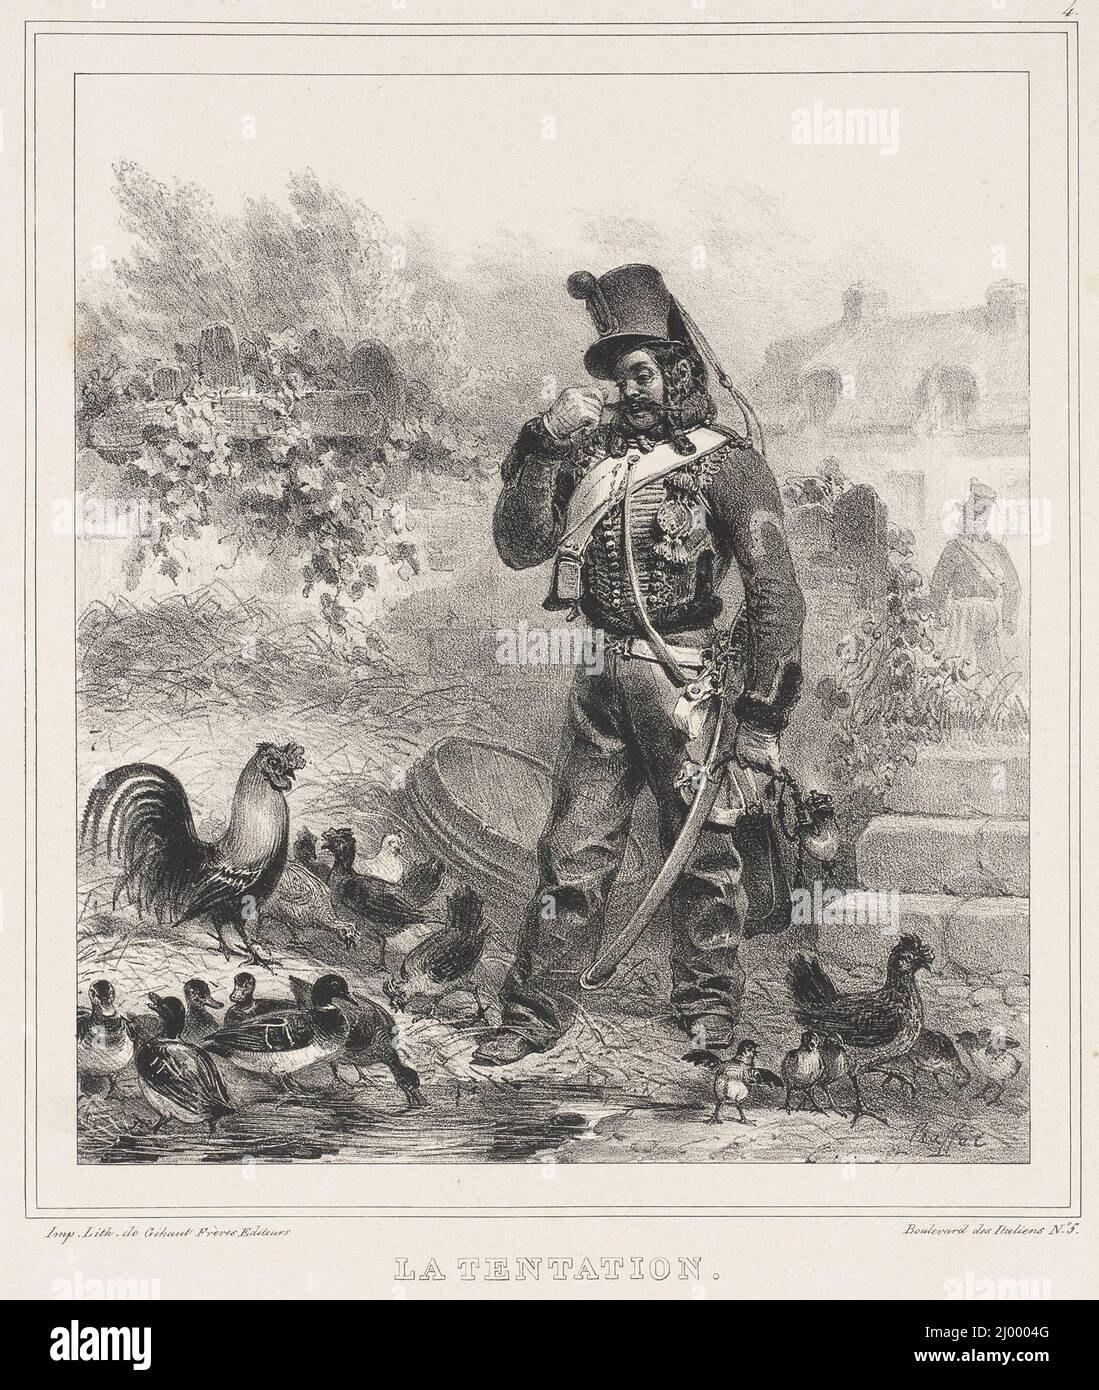 La Tentation. Auguste Raffet (France, Paris, 1804-1860). France, circa 1833. Prints; lithographs. Lithograph Stock Photo